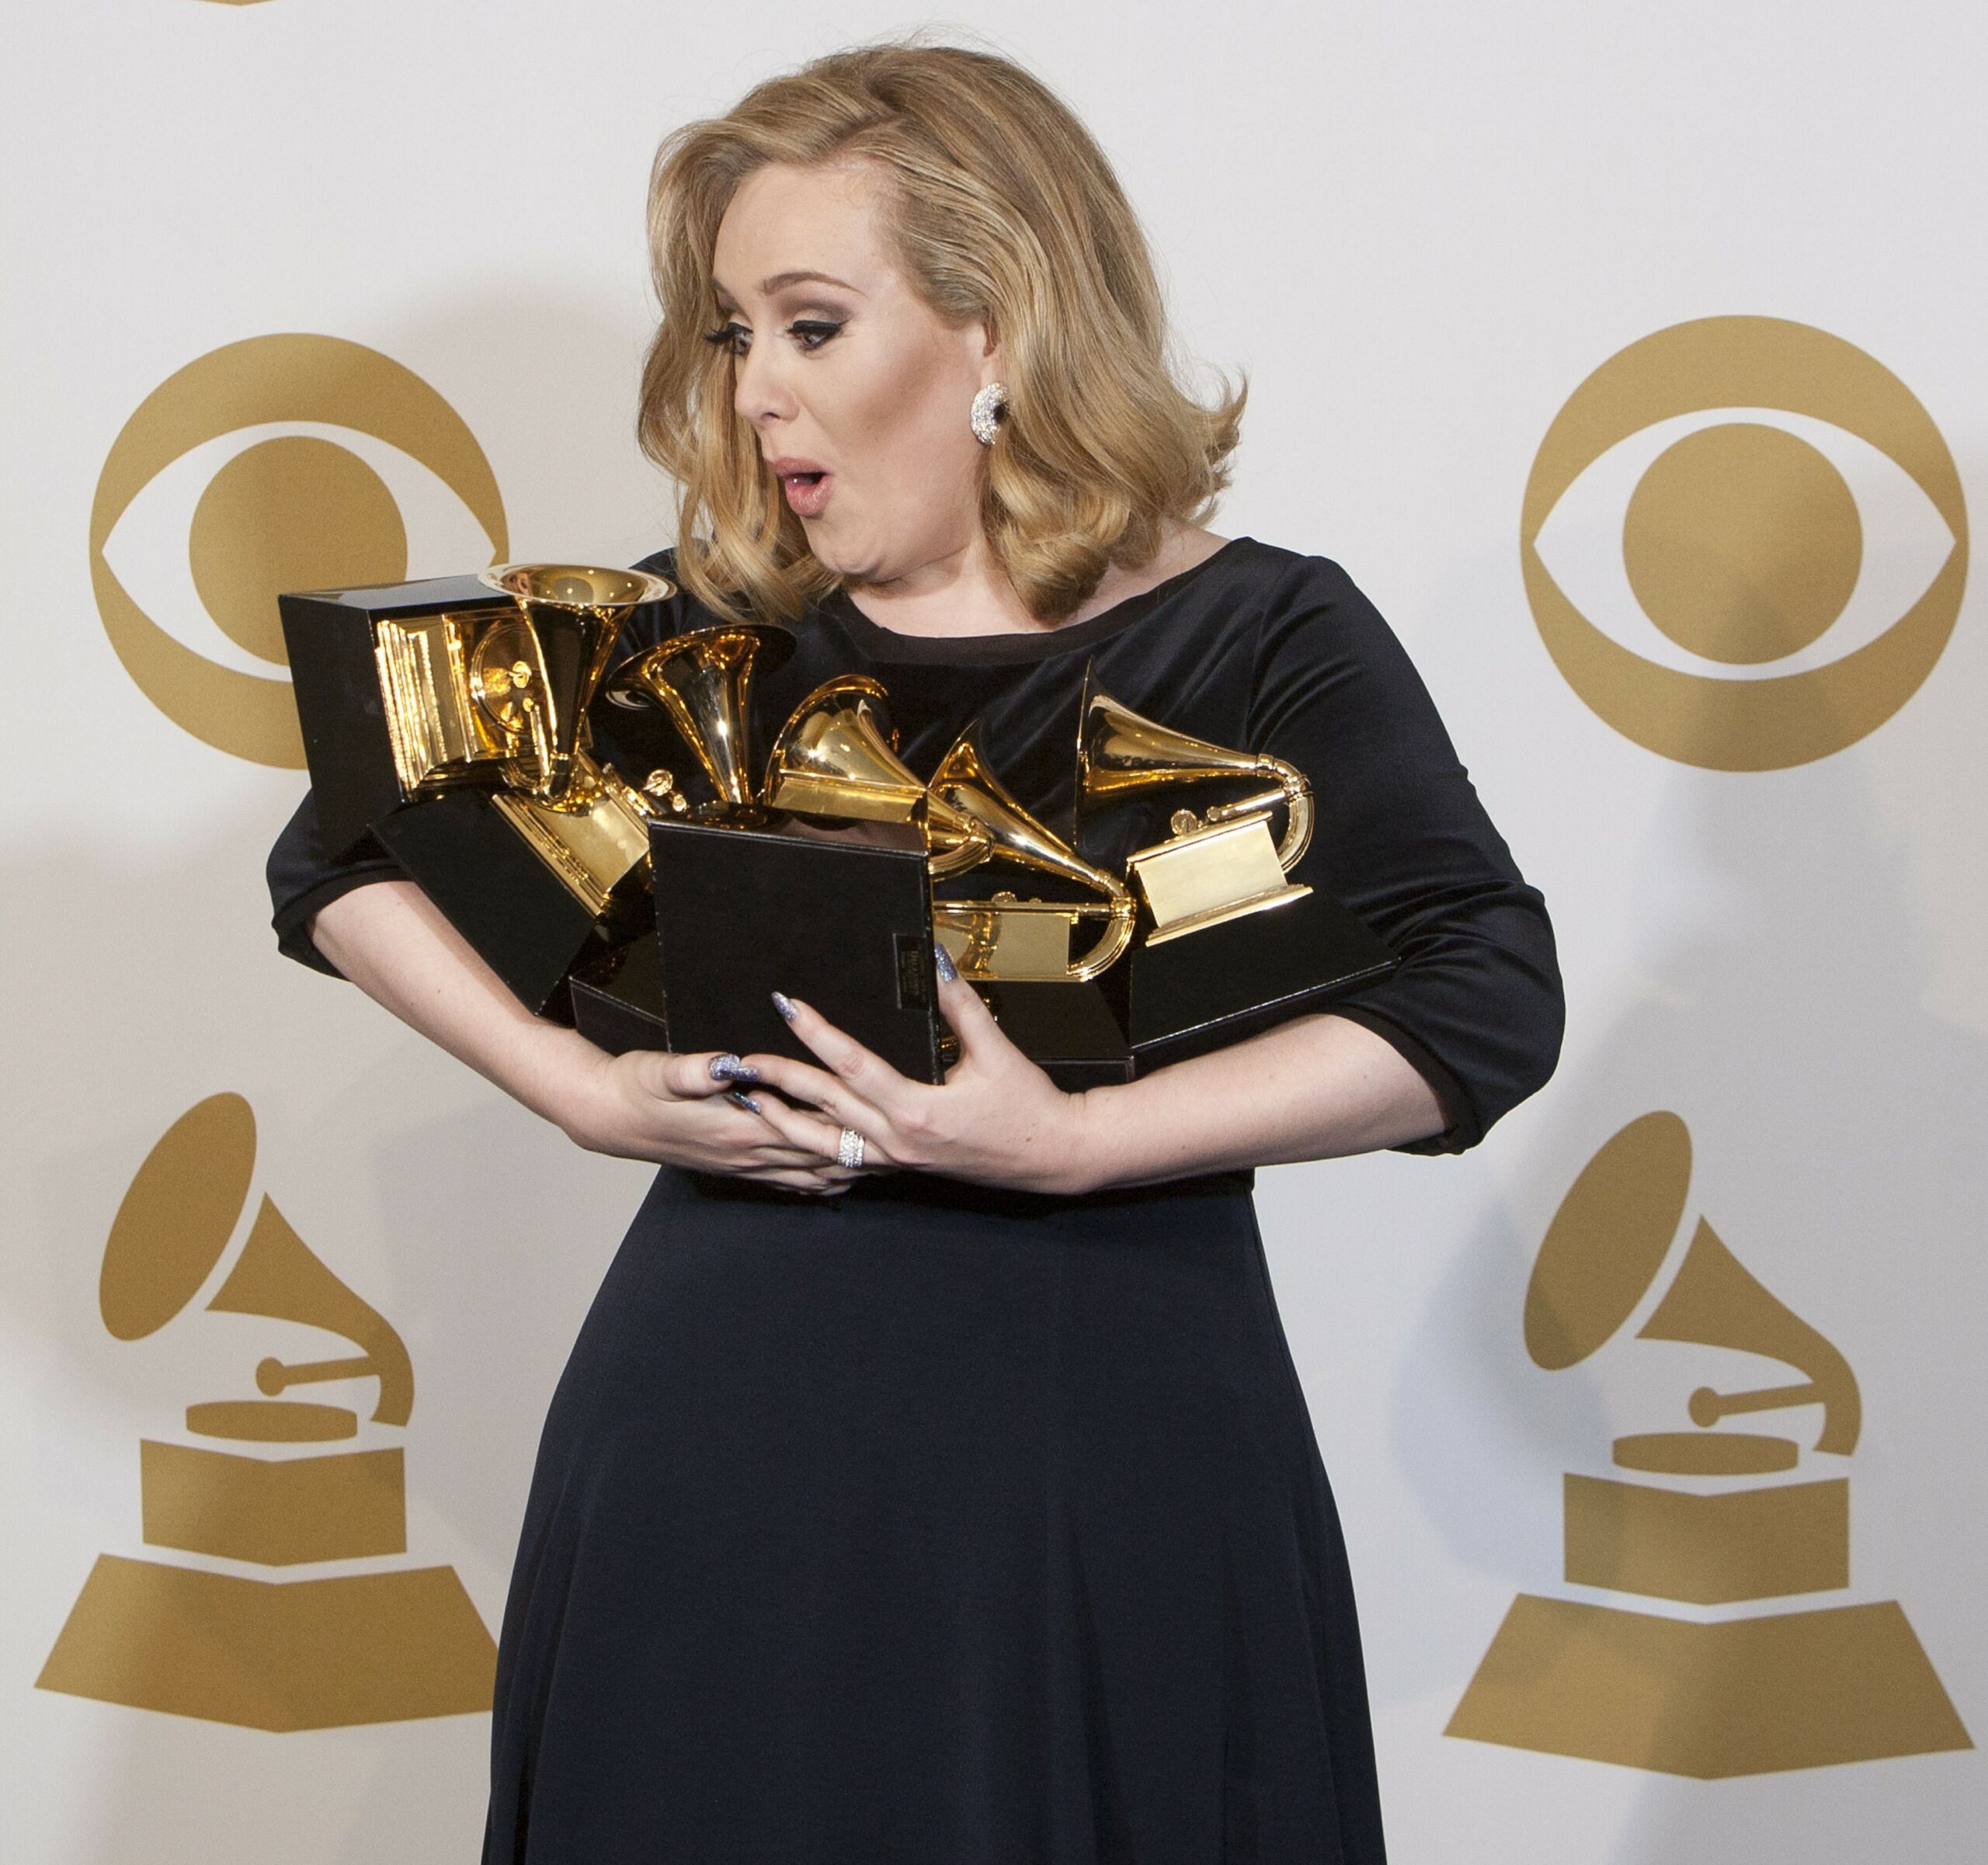 Aww! Melodiile lui Adele, în varianta de adormit bebeluși. Ascultă cum sună Rolling In The Deep!